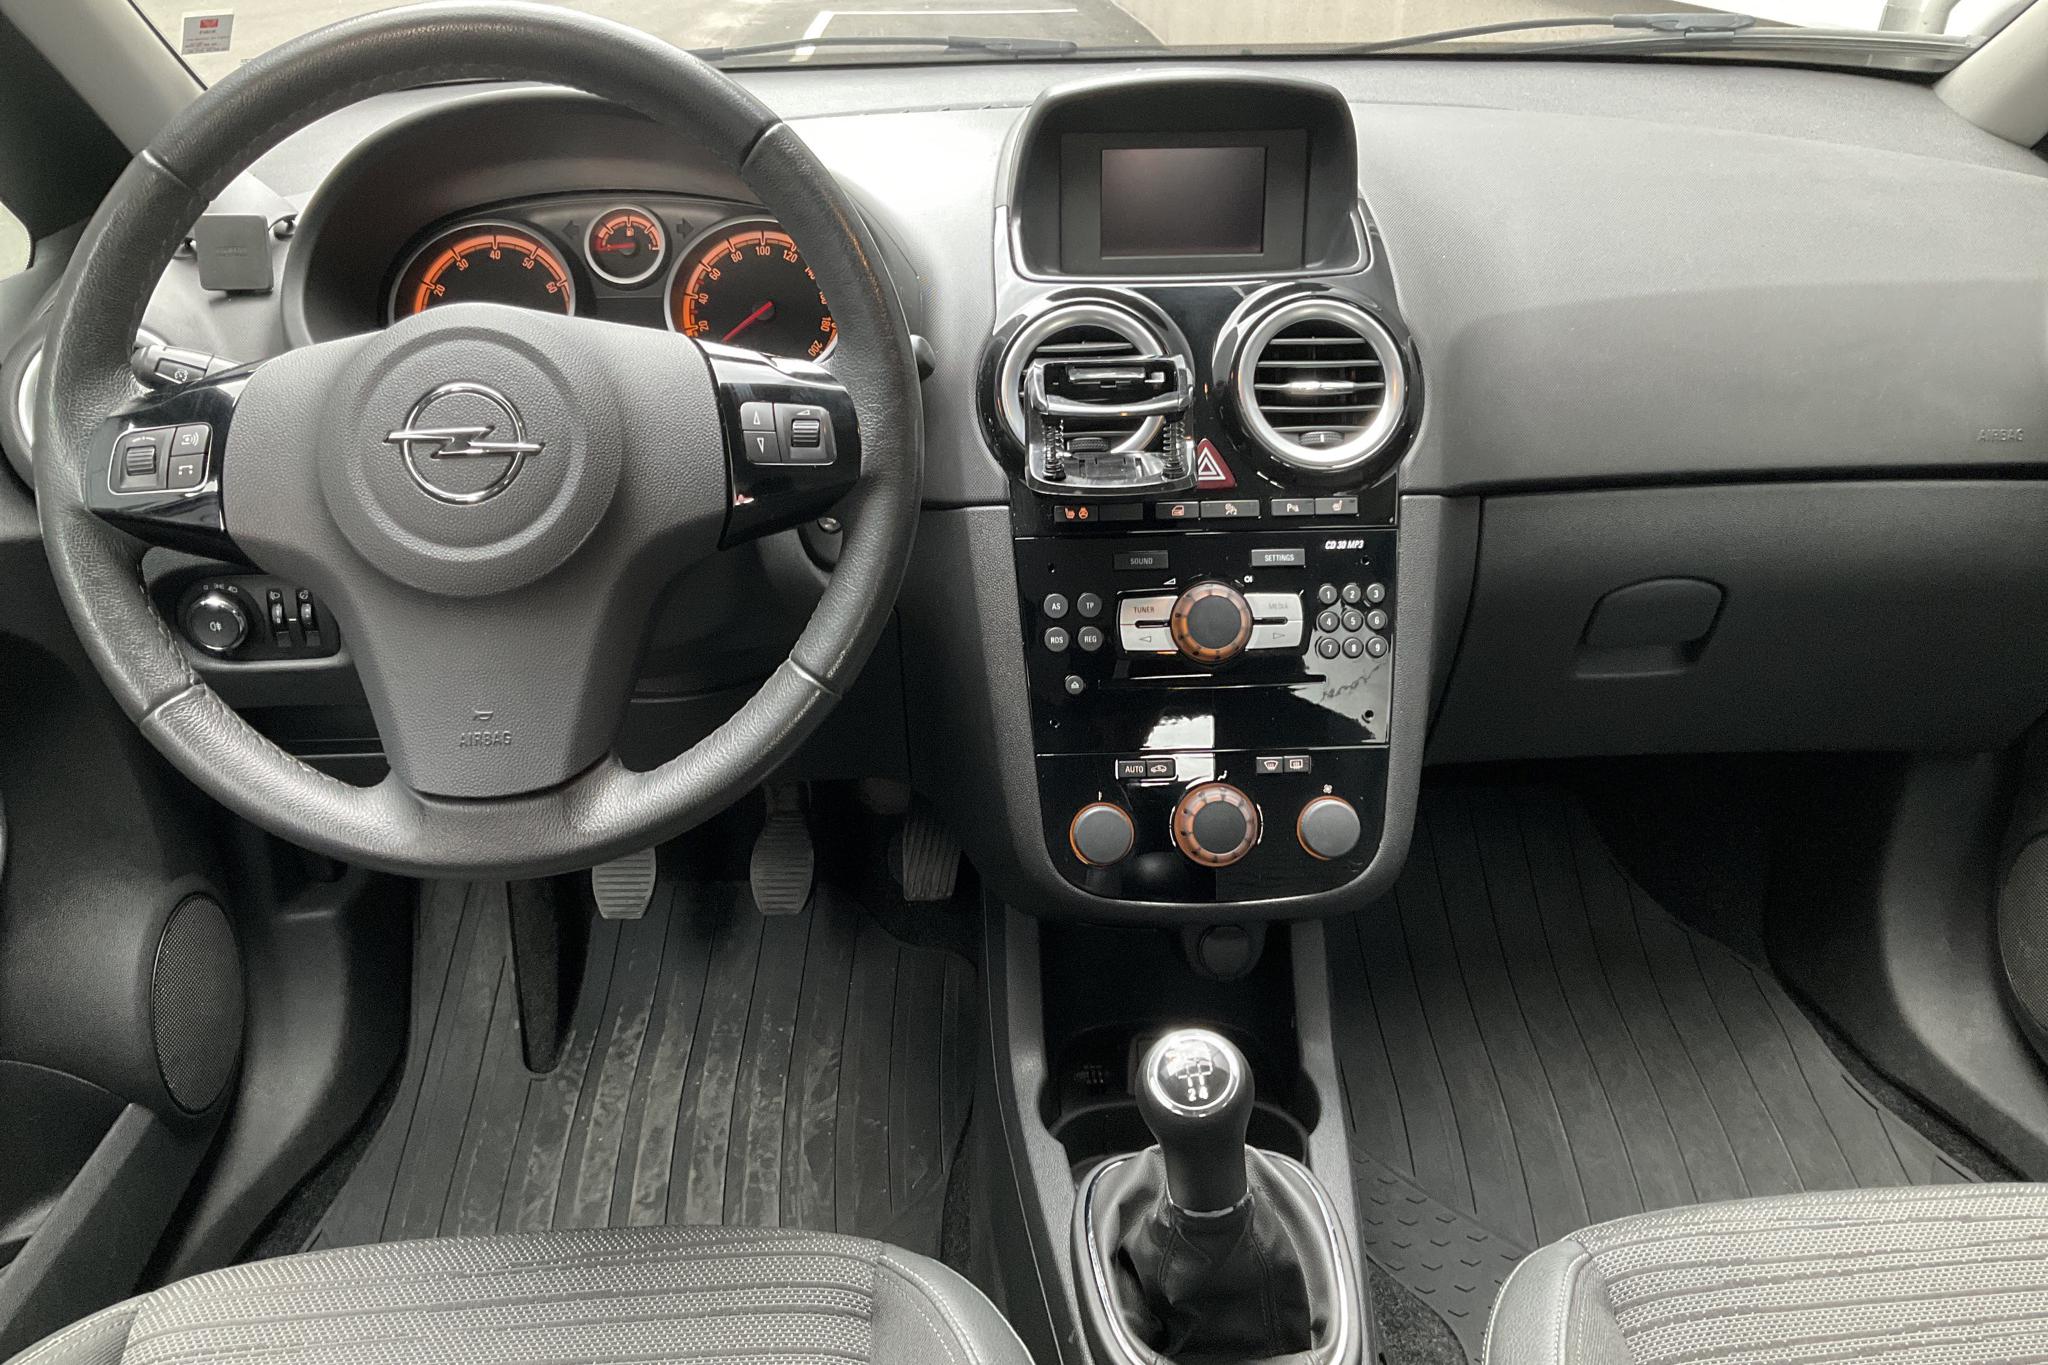 Opel Corsa 1.2 Twinport 5dr (85hk) - 10 753 mil - Manuell - svart - 2014